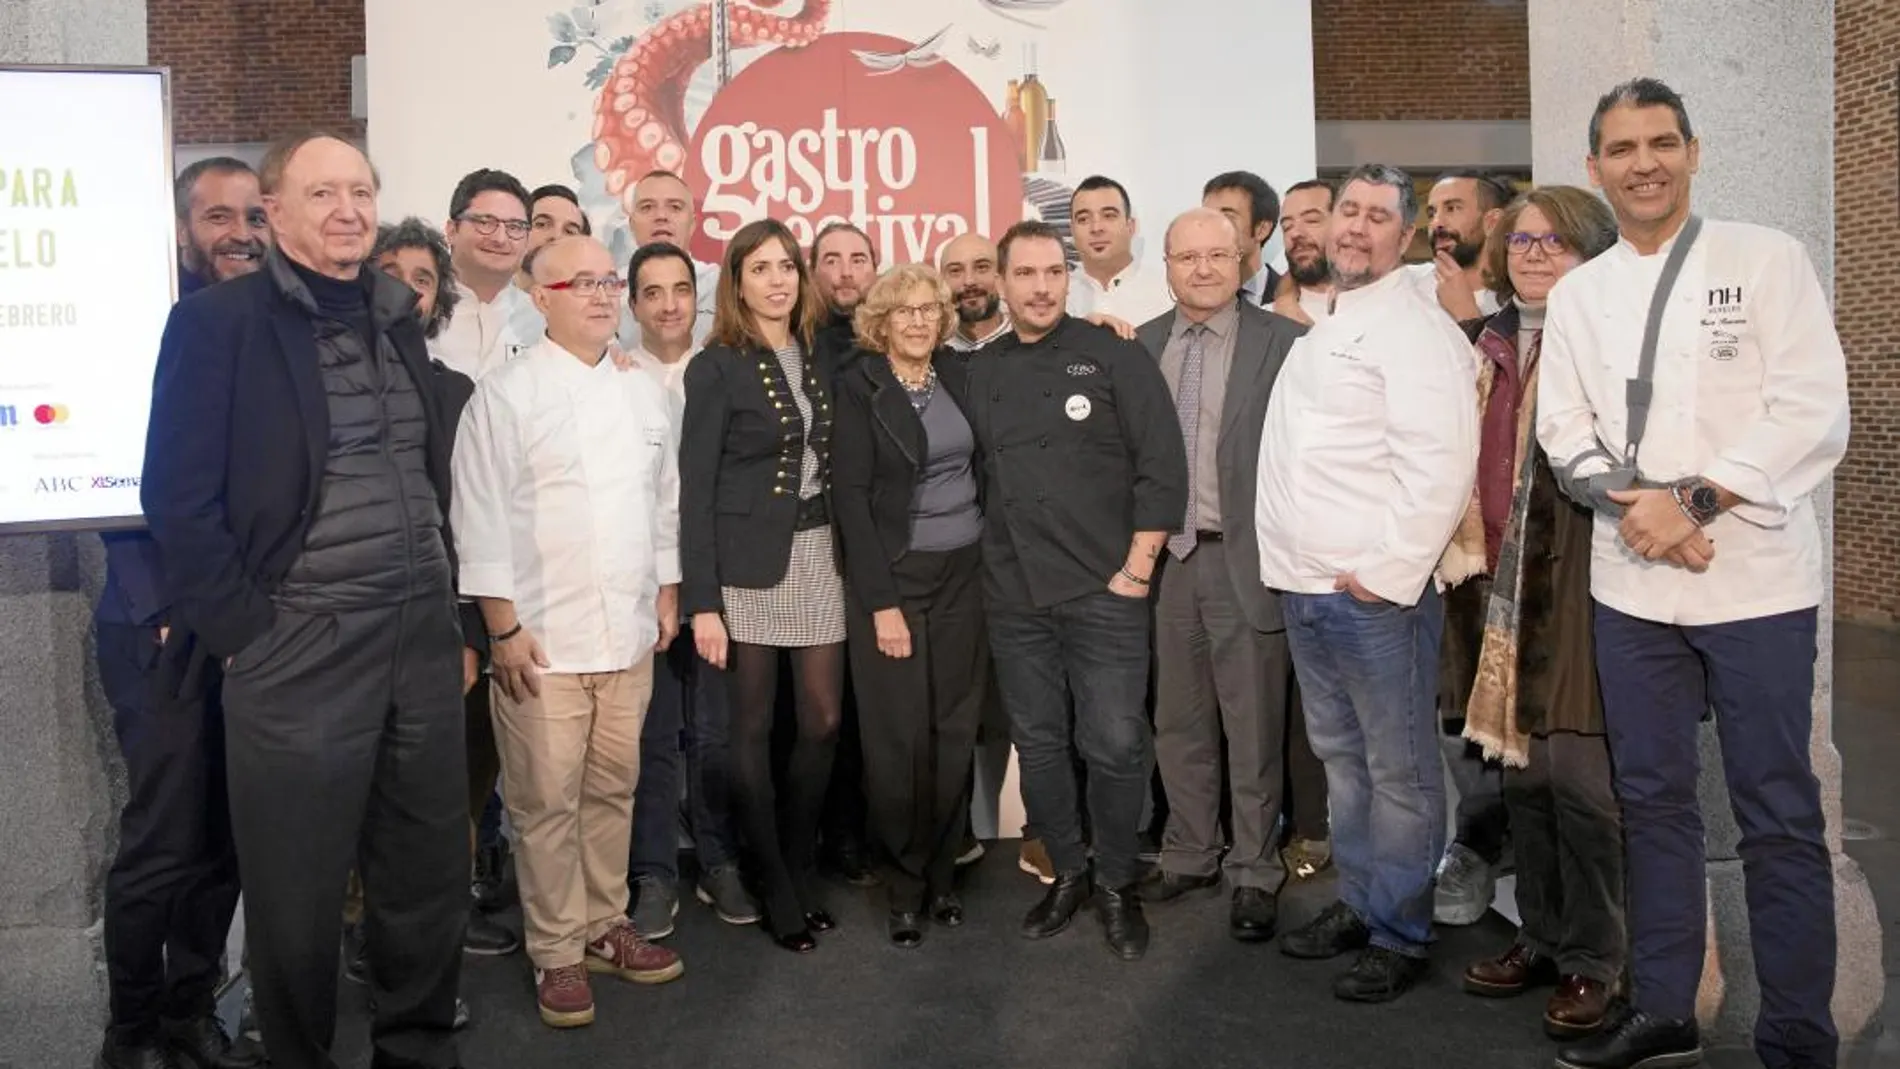 La alcaldesa, Manuela Carmena, presentó ayer el festival acompañada de cocineros del firmamento Michelín